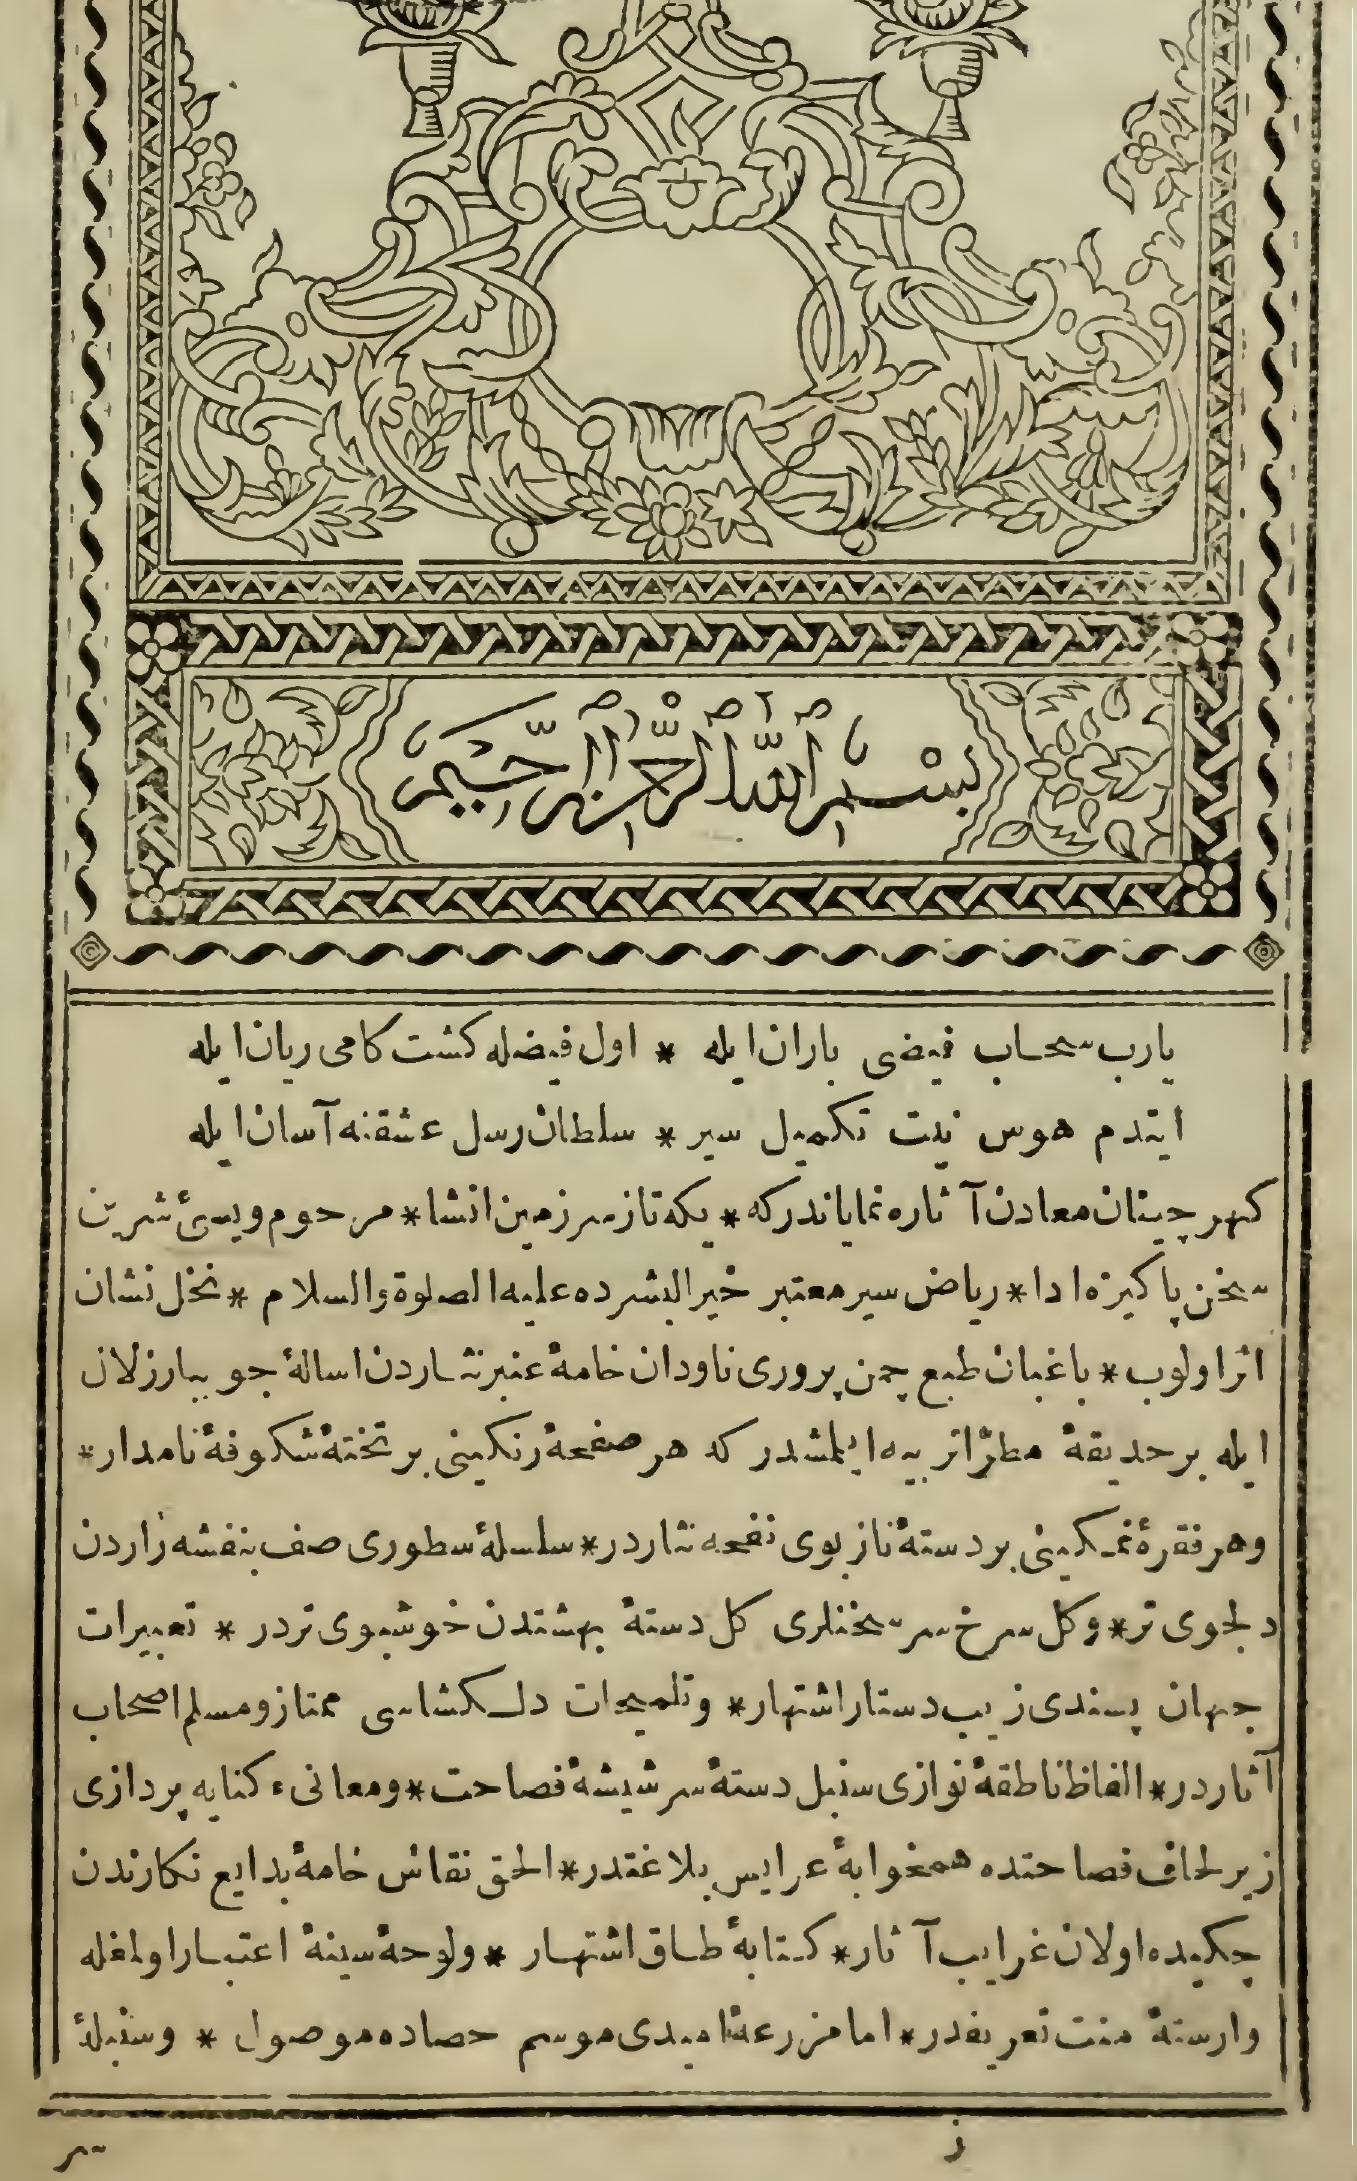 File:First Page of Siyer-i Nebi (1832), Ottoman Turkish Sira.jpg